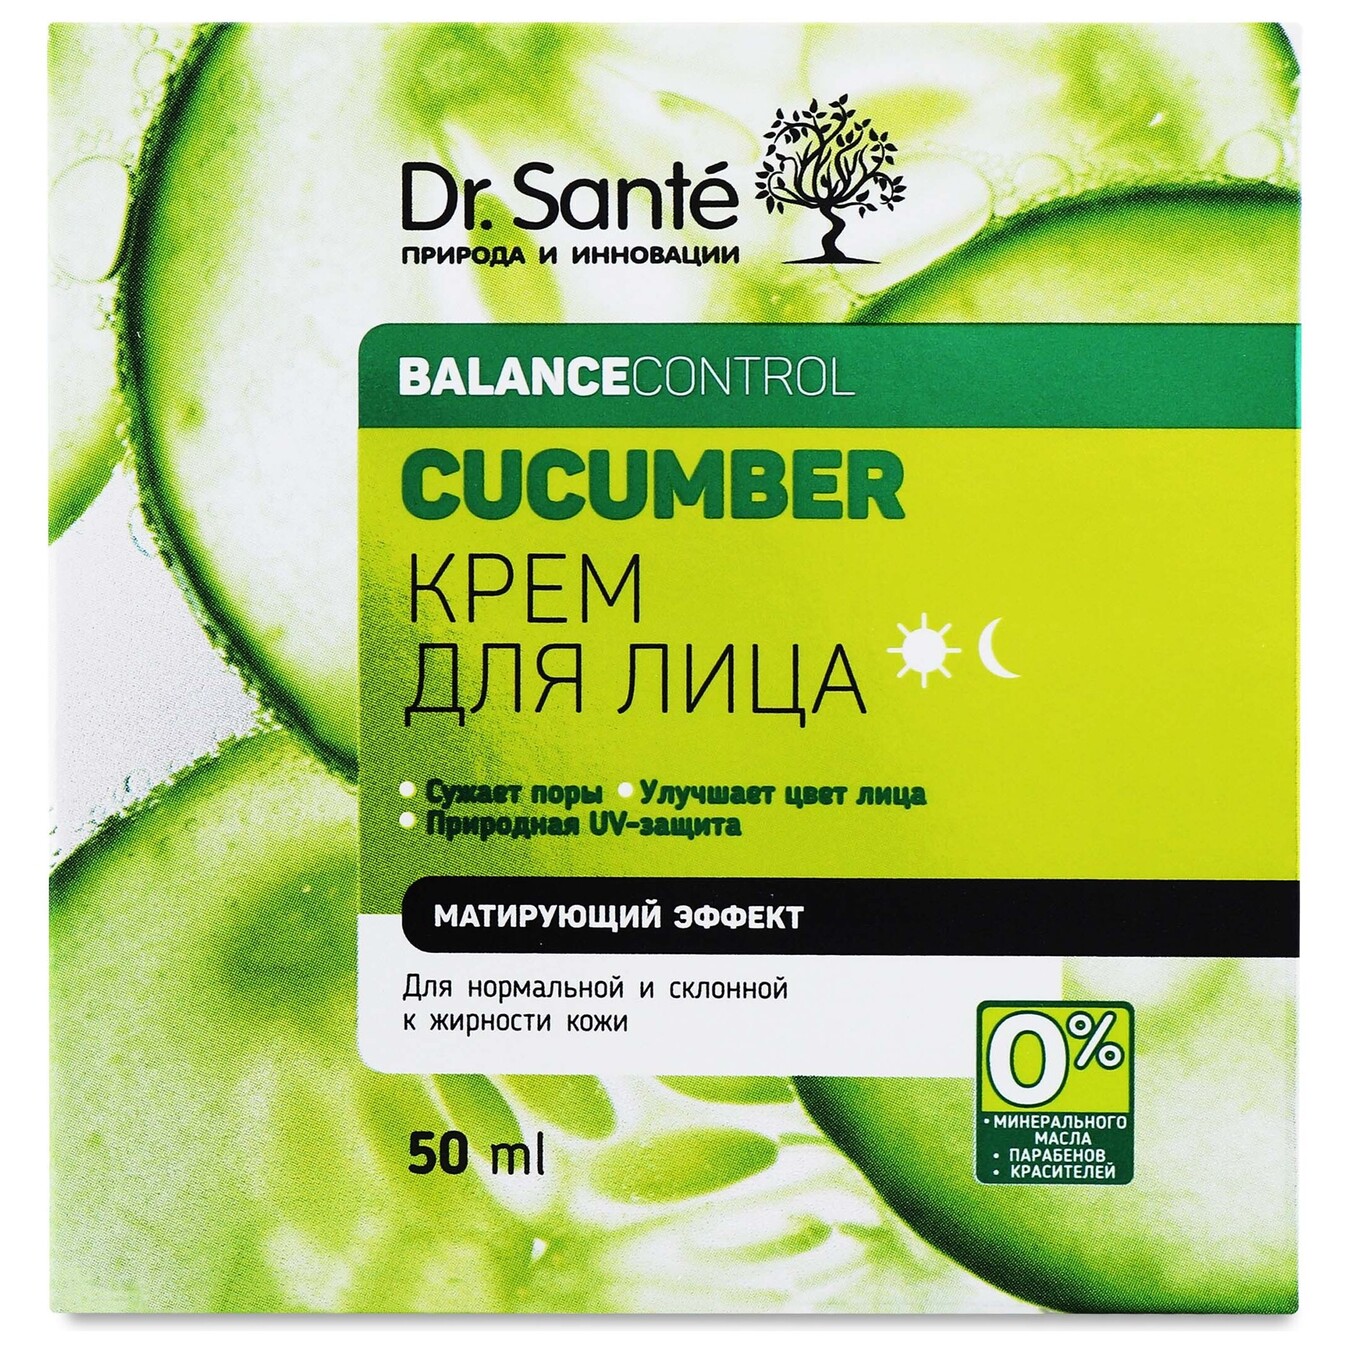 Dr. Sante Cucumber face cream 50ml